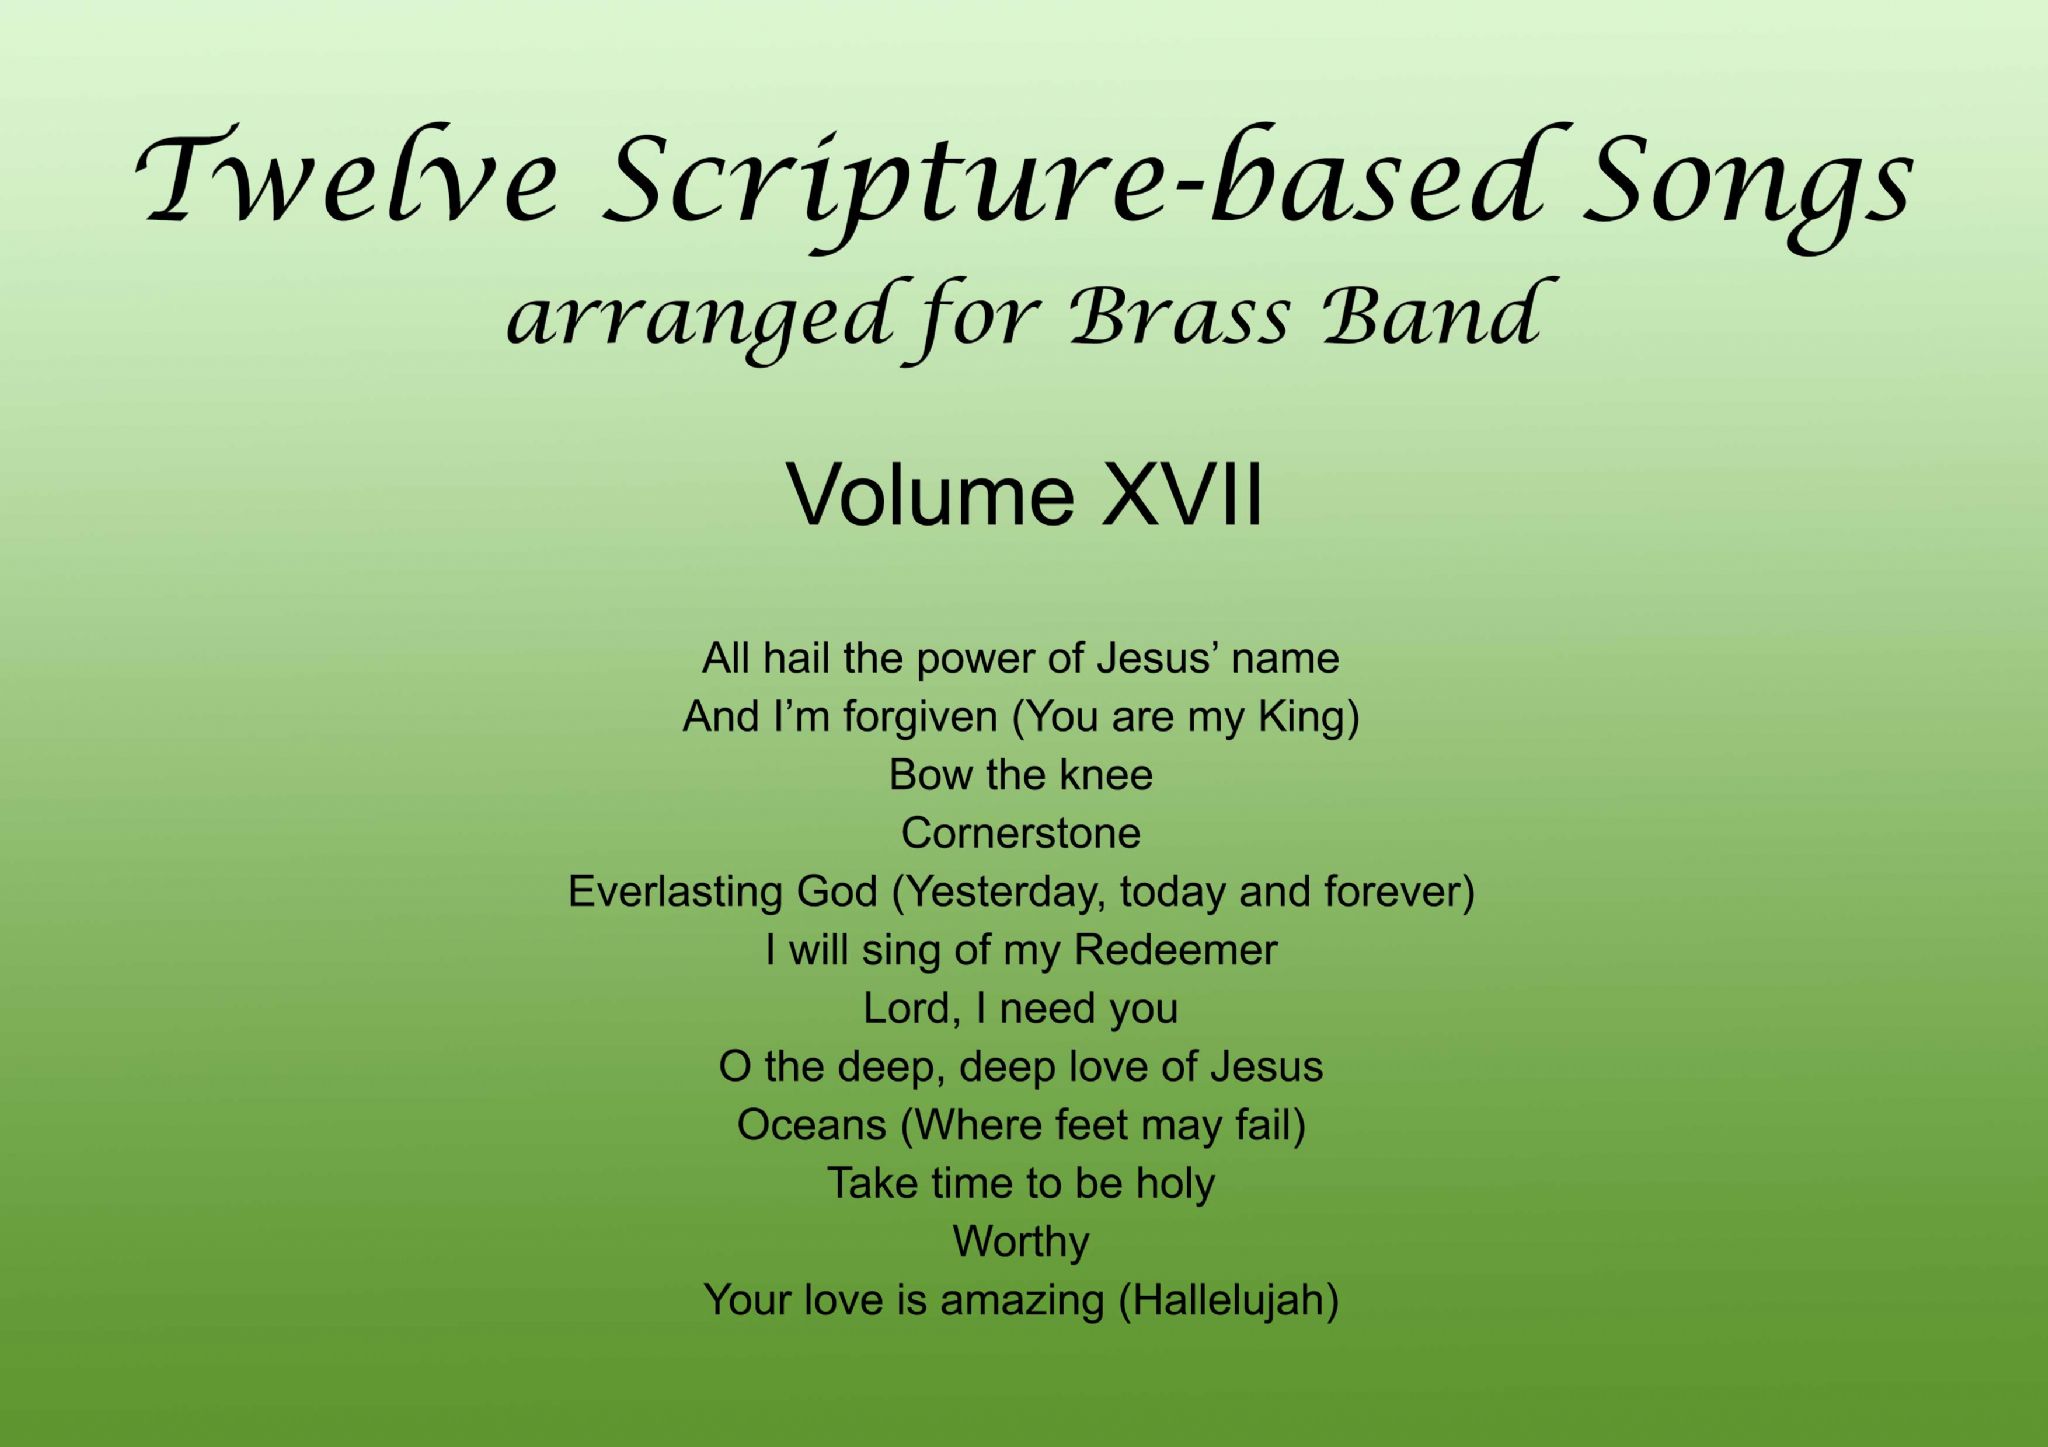 Twelve Scripture-based Songs Volume XVII